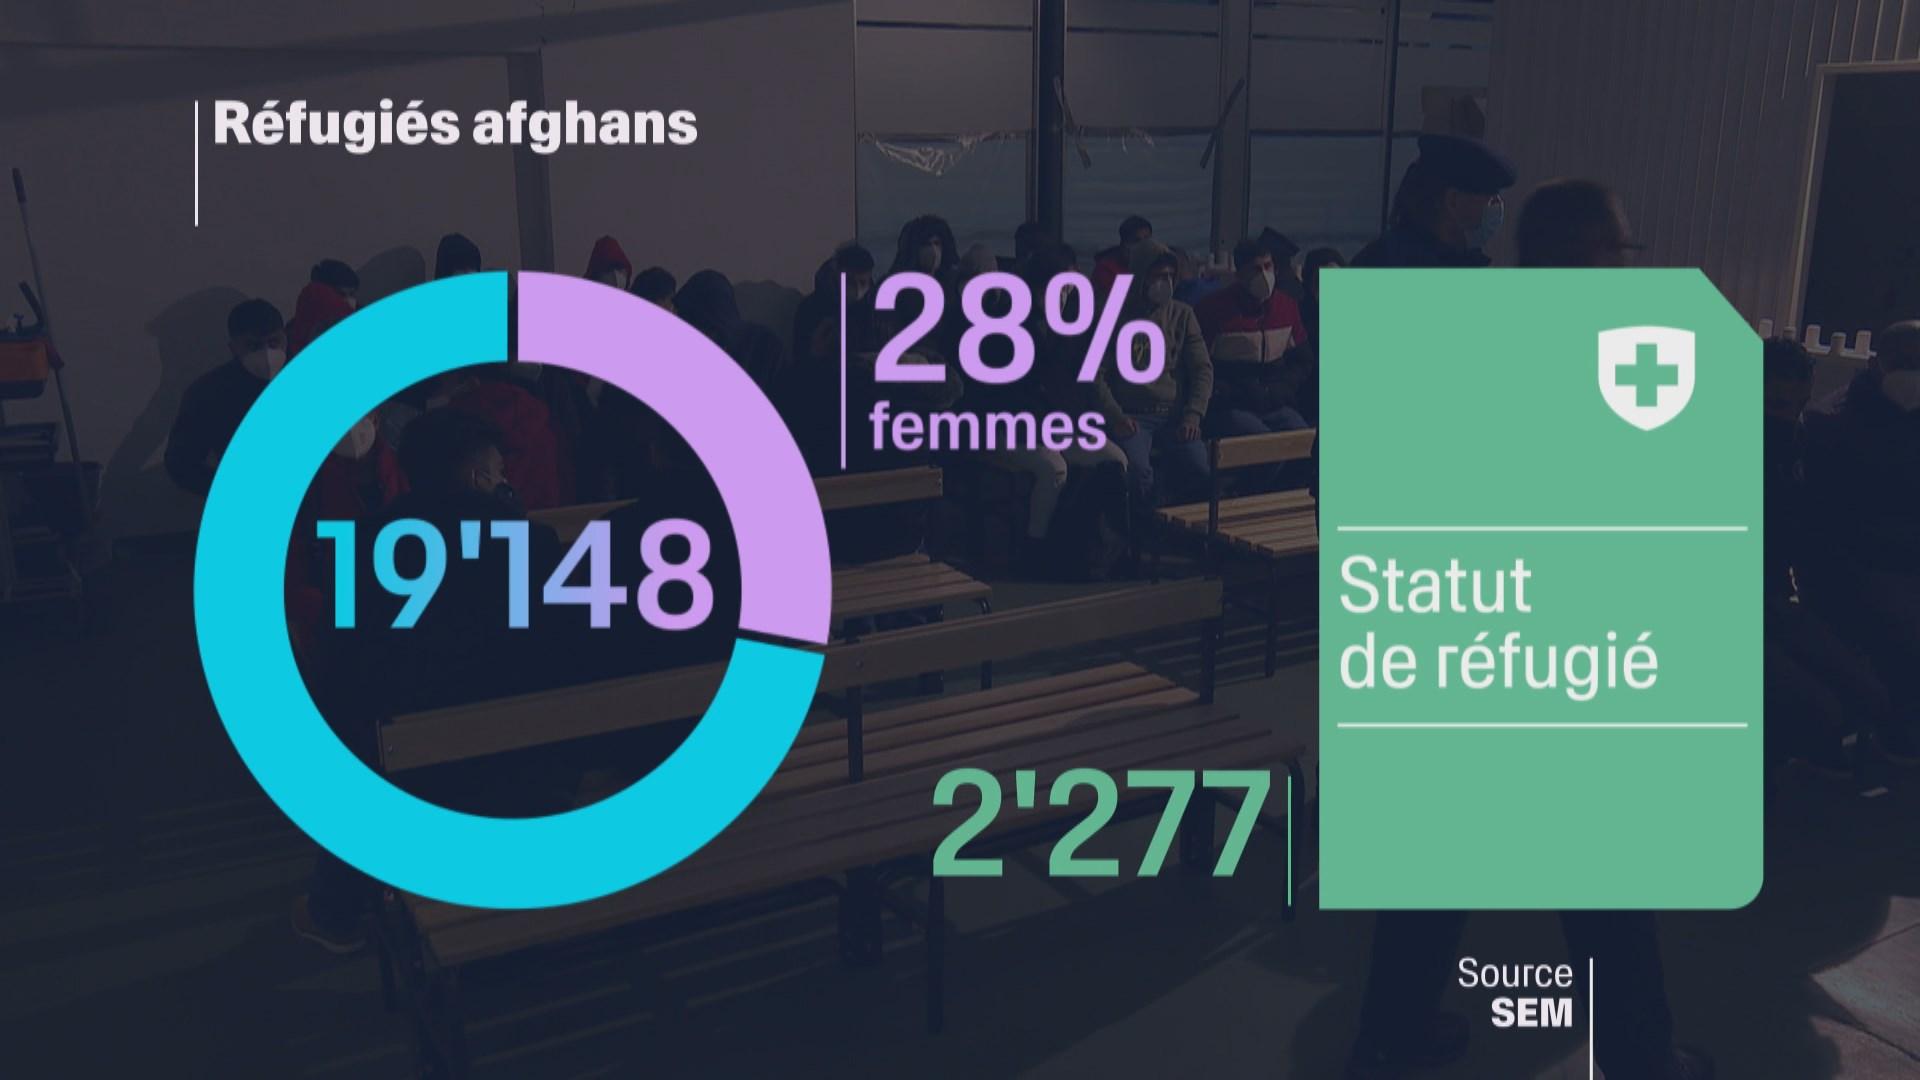 Sur les quelques 19'000 réfugiés afghans actuellement dans le pays, 28% sont des femmes. 2277 d'entre elles ont obtenu le statut de réfugié.